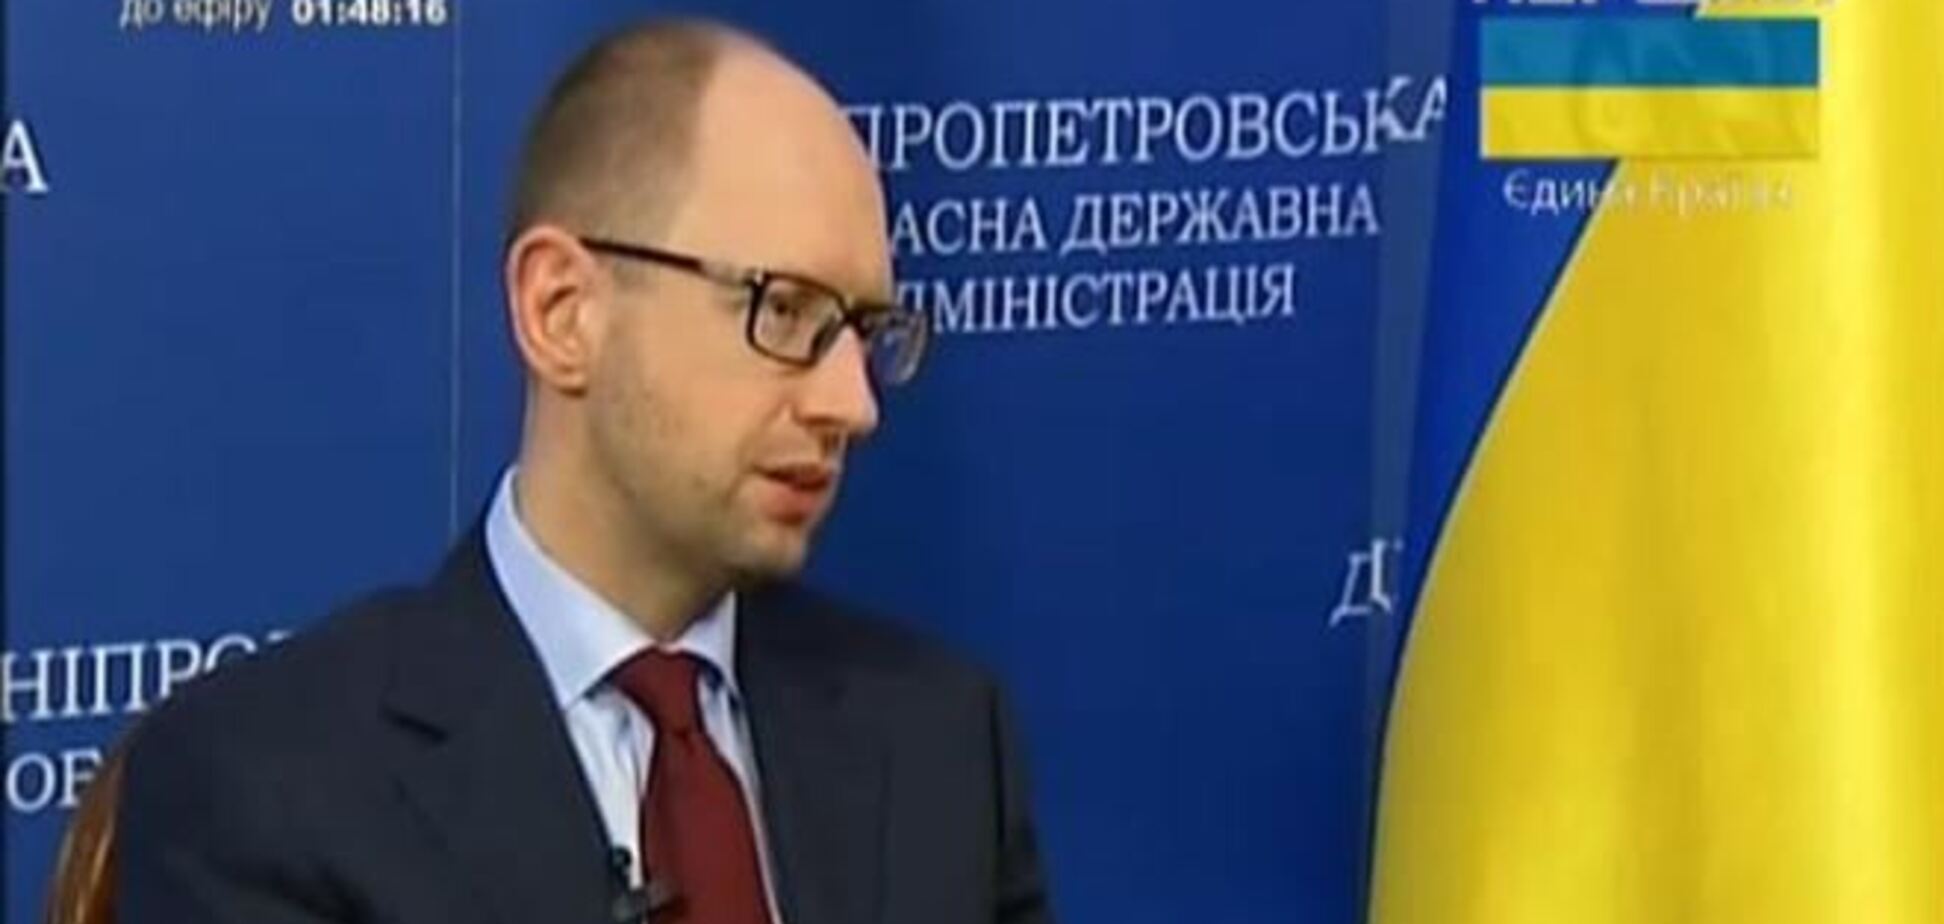 Яценюк: те, кто говорит о федерализации Украины, хочет иметь маленьких Януковичей в каждой области